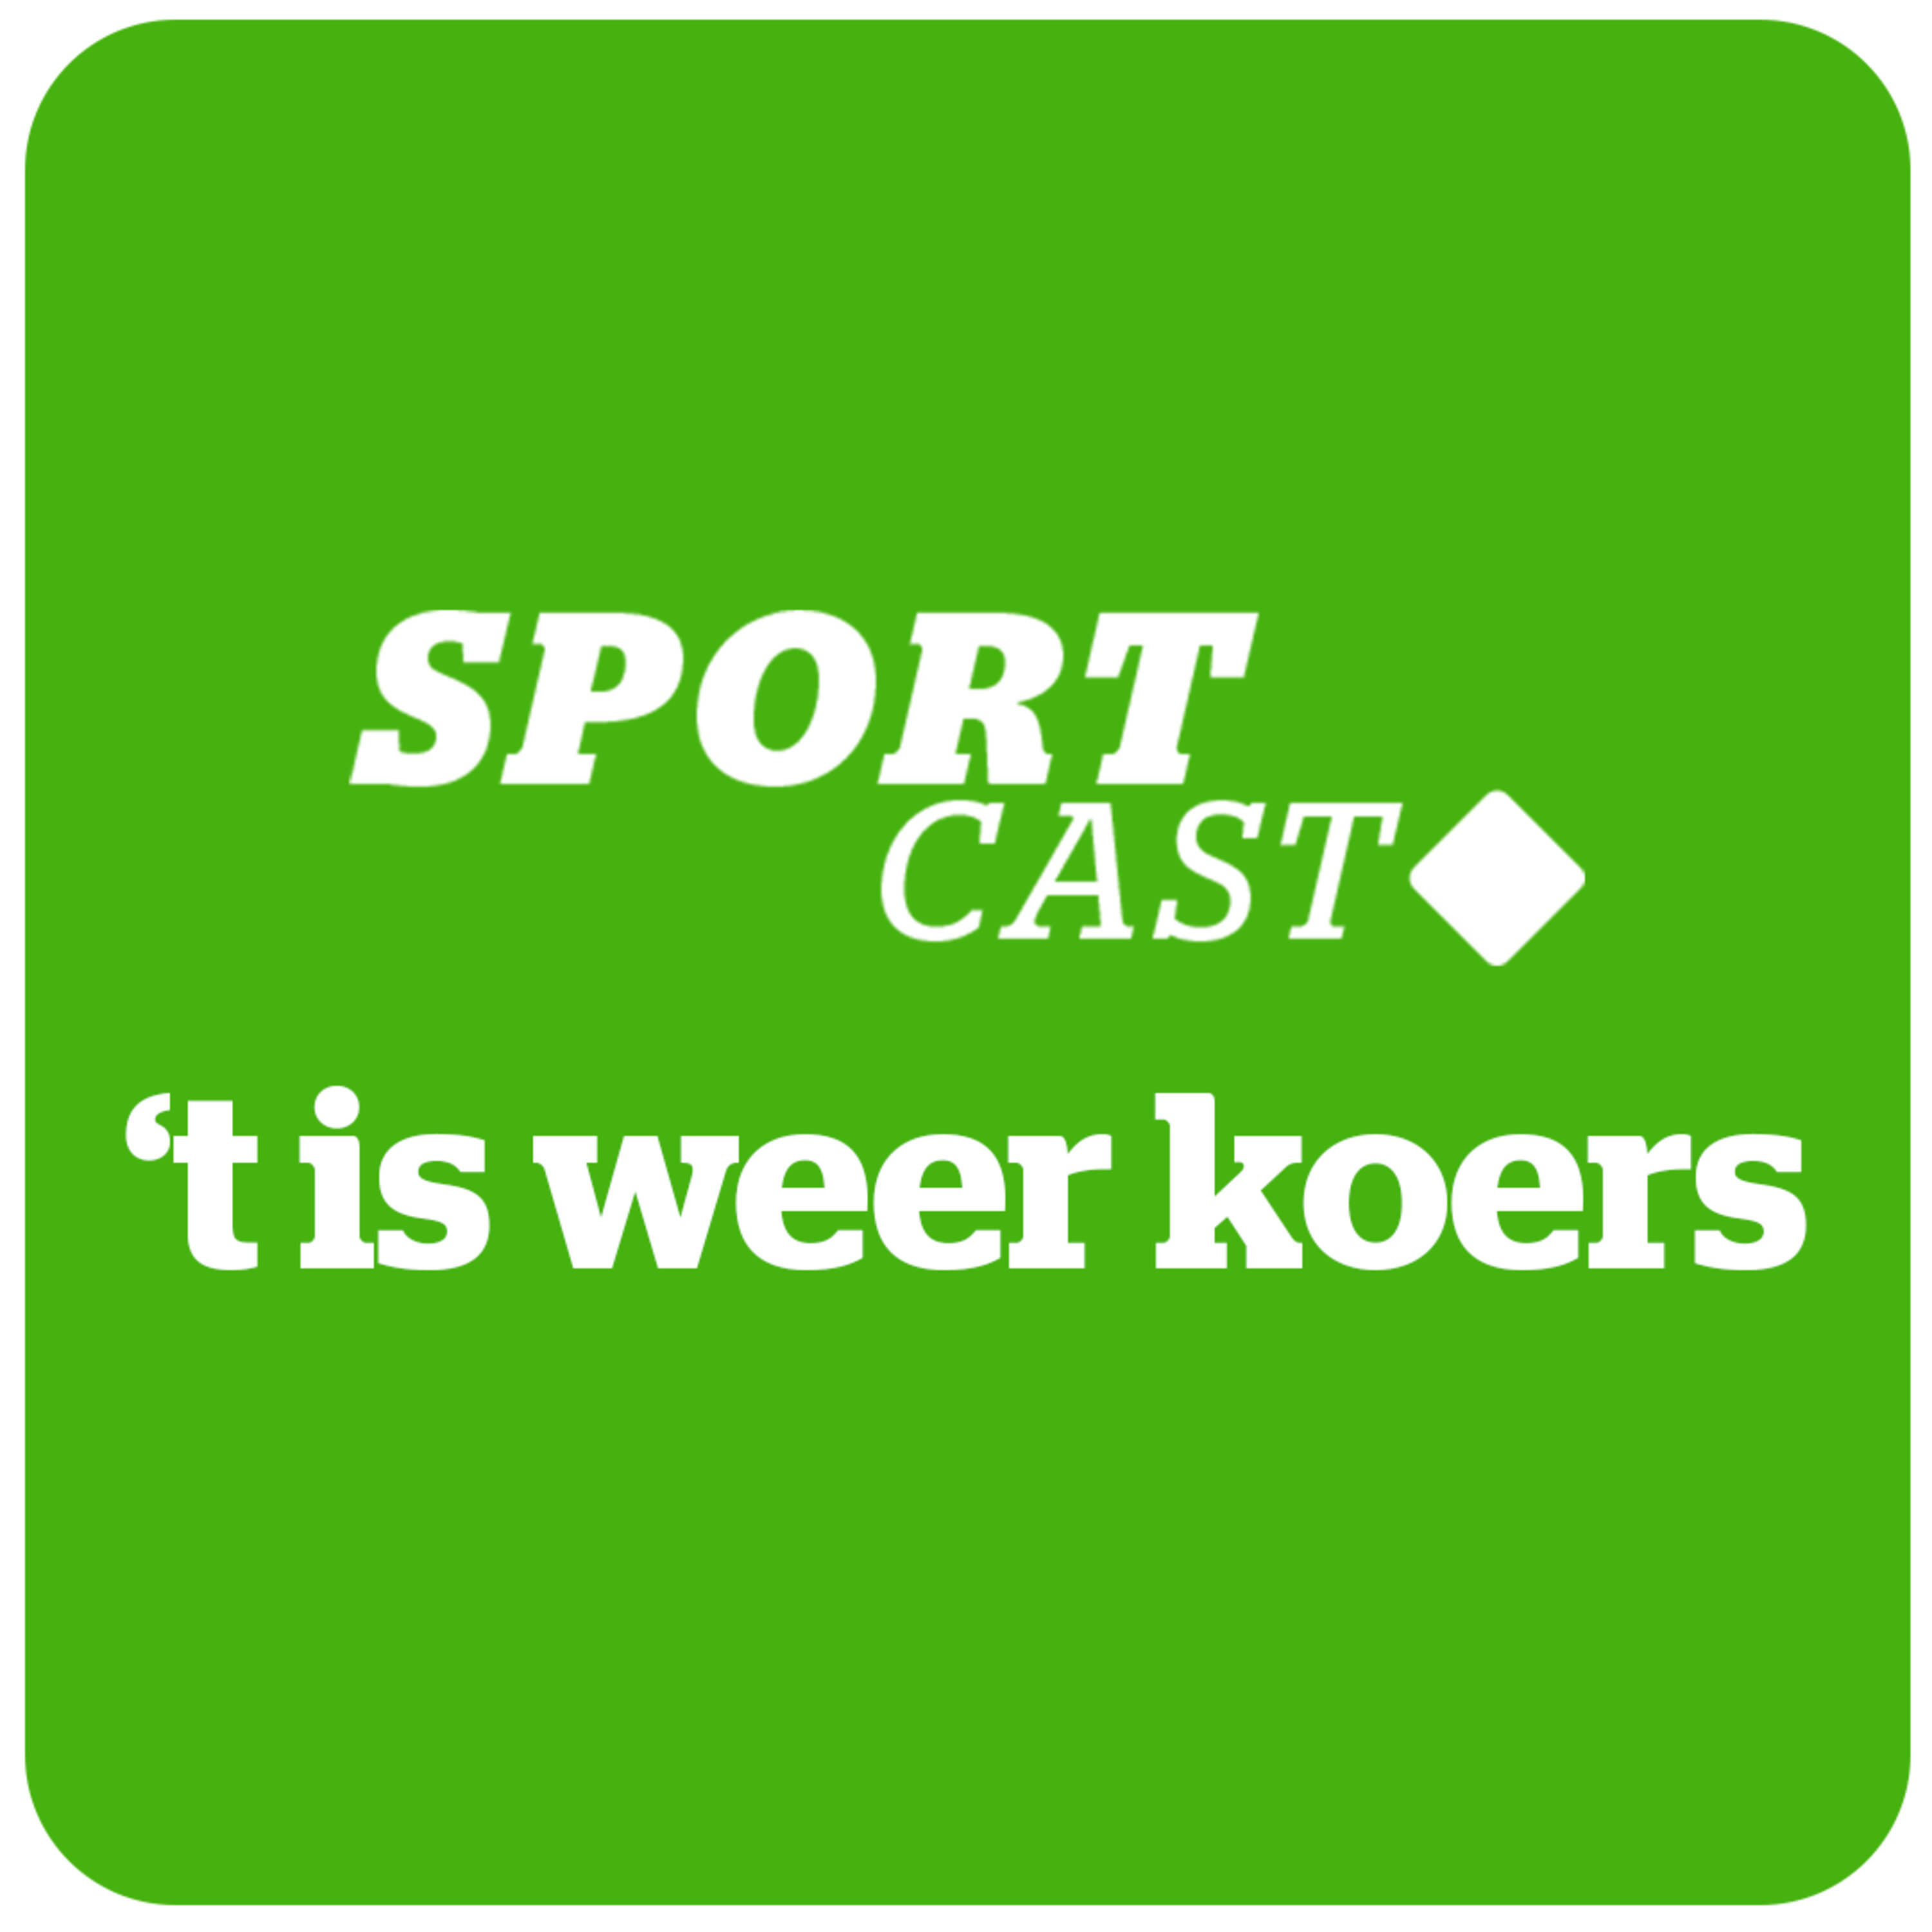 HLN Sportcast 't is weer koers #10: “Wout Van Aert moet vanaf nu veel meer keuzes maken en niet alles willen rijden.”